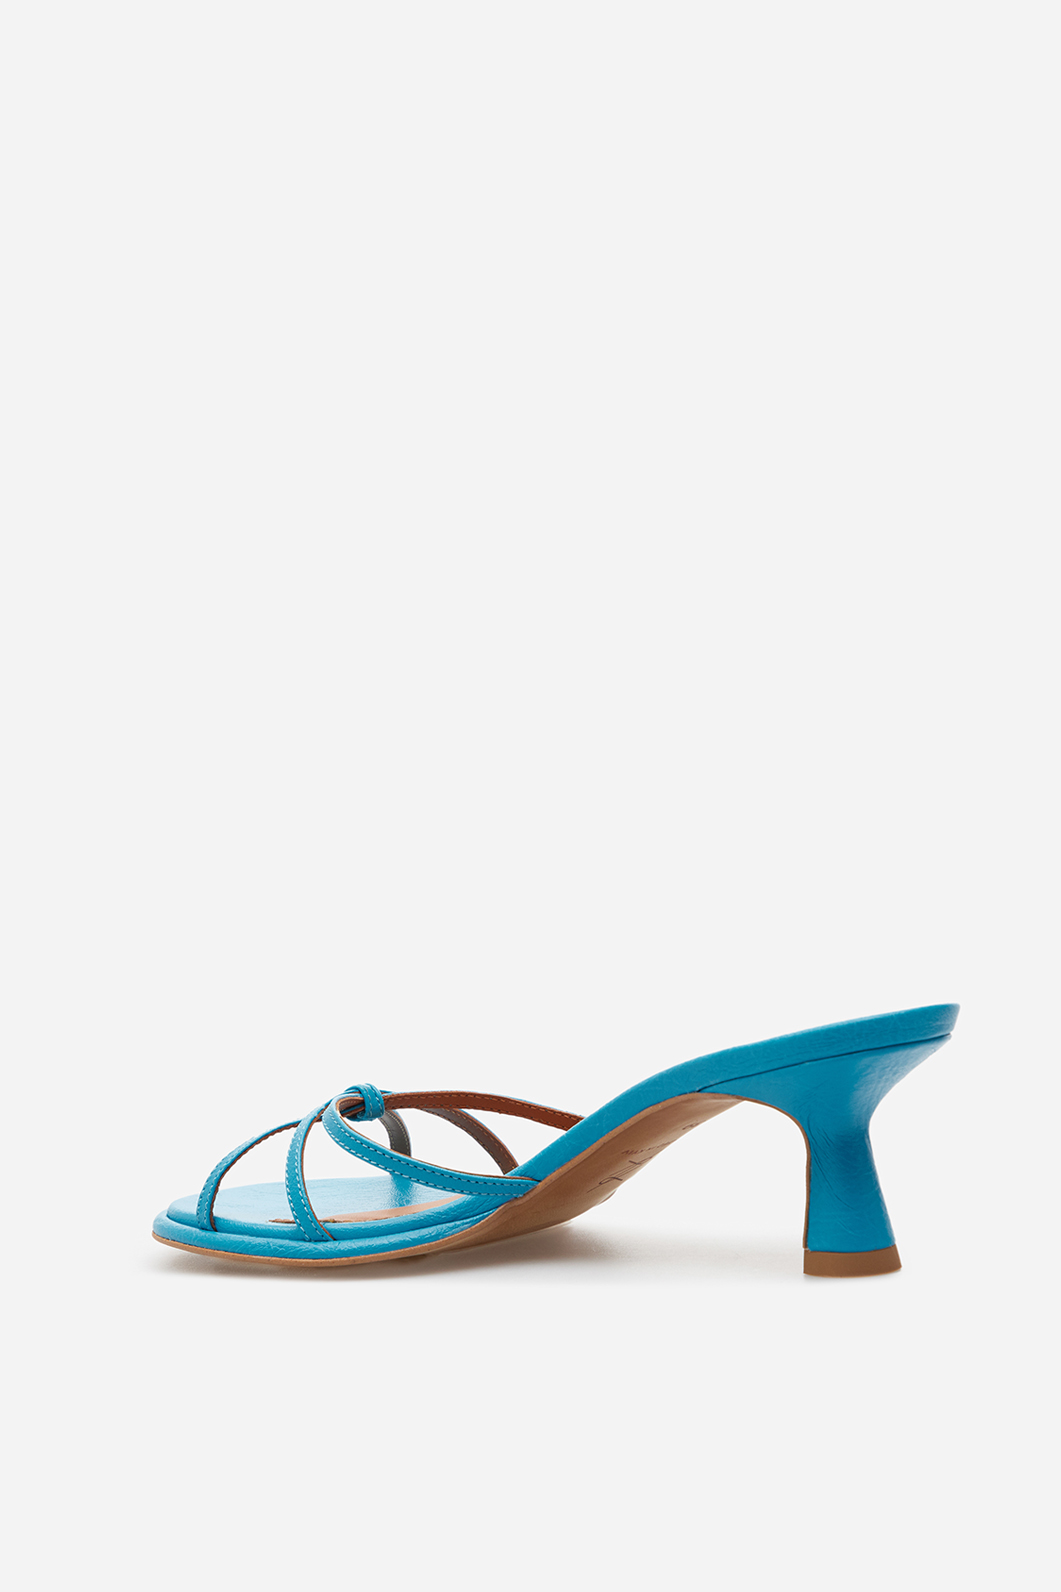 Mona blue leather
sandals /5 cm/